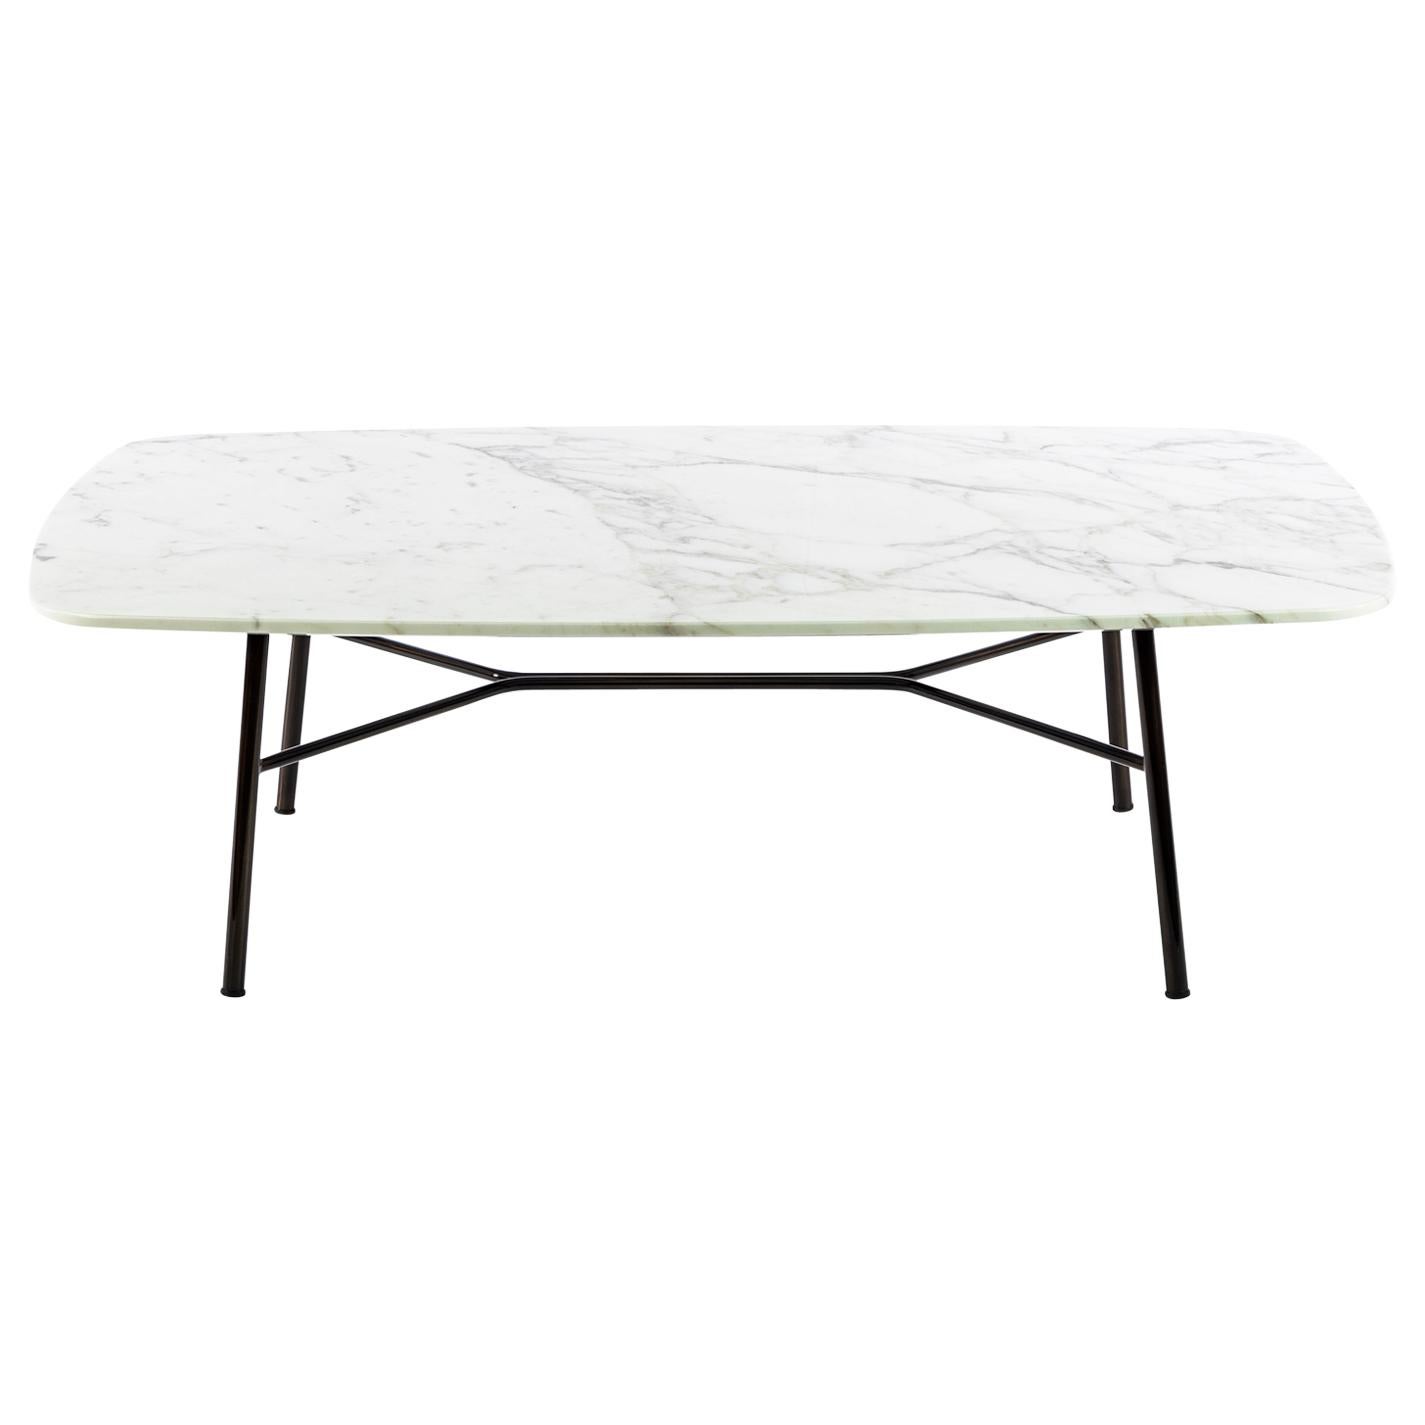 Petite table Yuki, cadre en métal, couleur blanche, design, table basse, verre, marbre